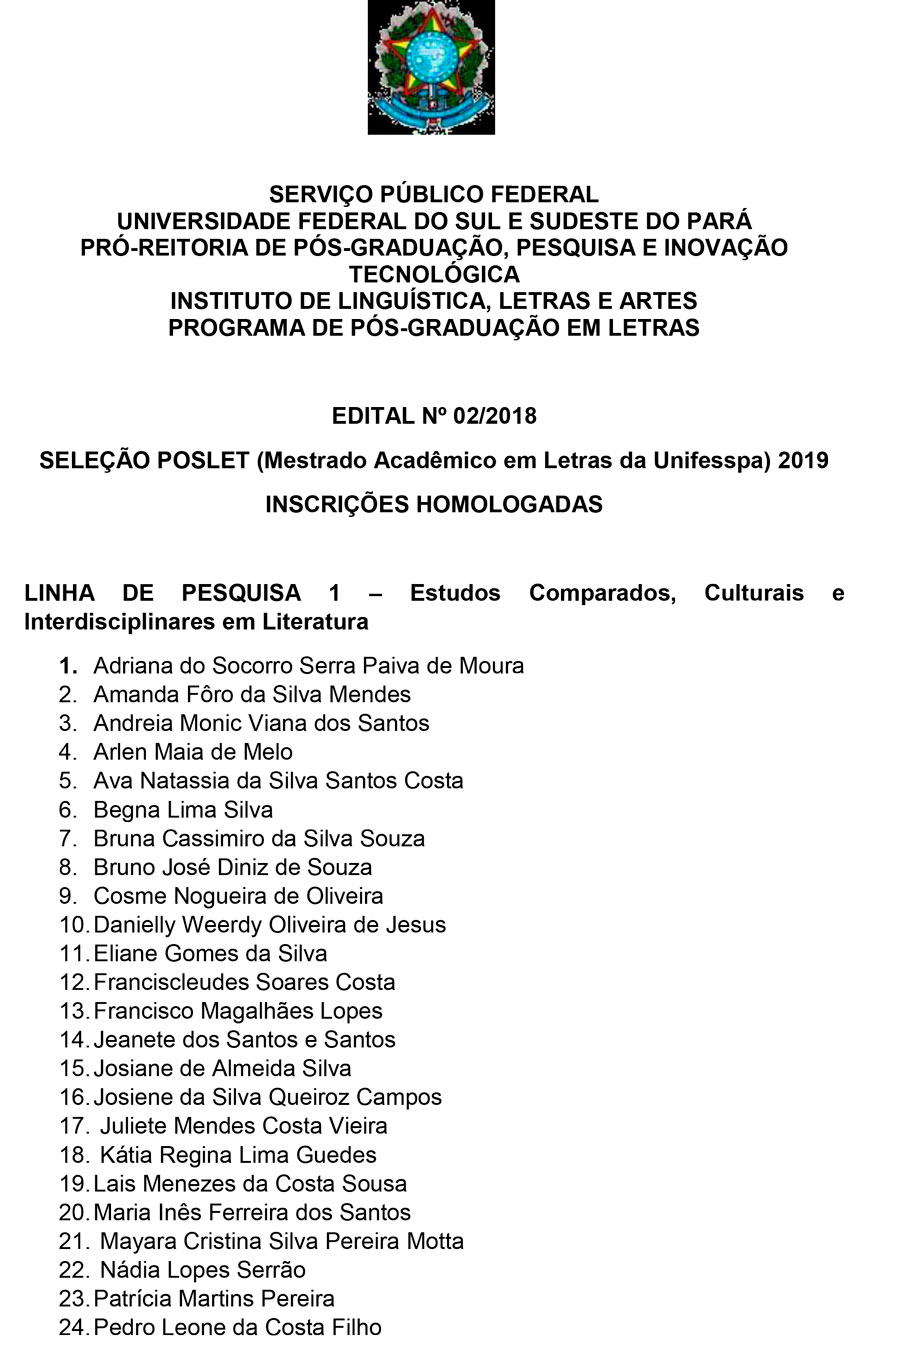 Homologação de Inscrições PROCESSO SELETIVO POSLET 2019 1